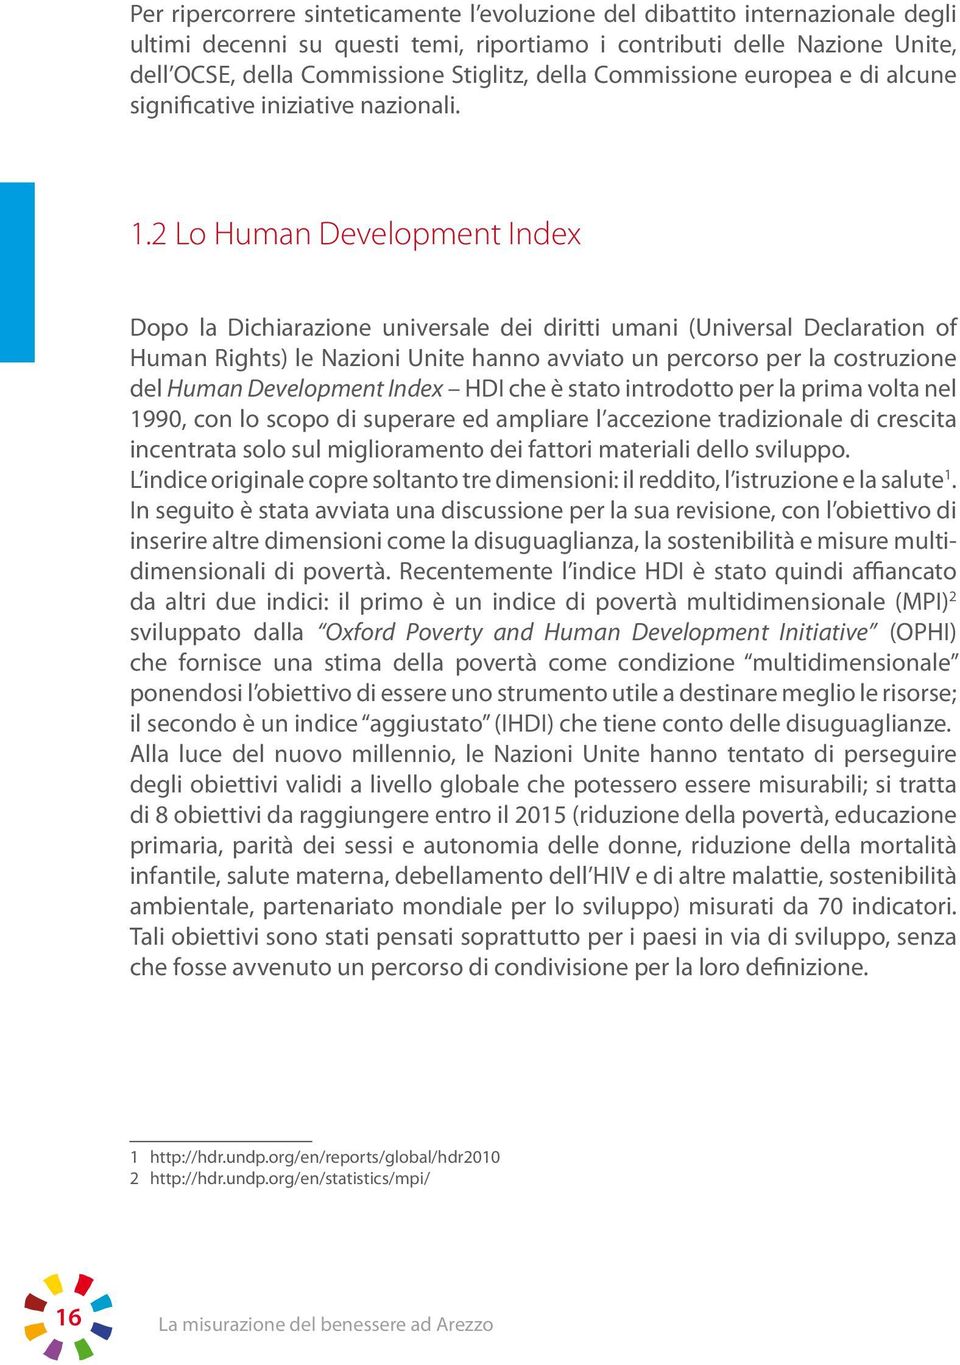 2 Lo Human Development Index Dopo la Dichiarazione universale dei diritti umani (Universal Declaration of Human Rights) le Nazioni Unite hanno avviato un percorso per la costruzione del Human